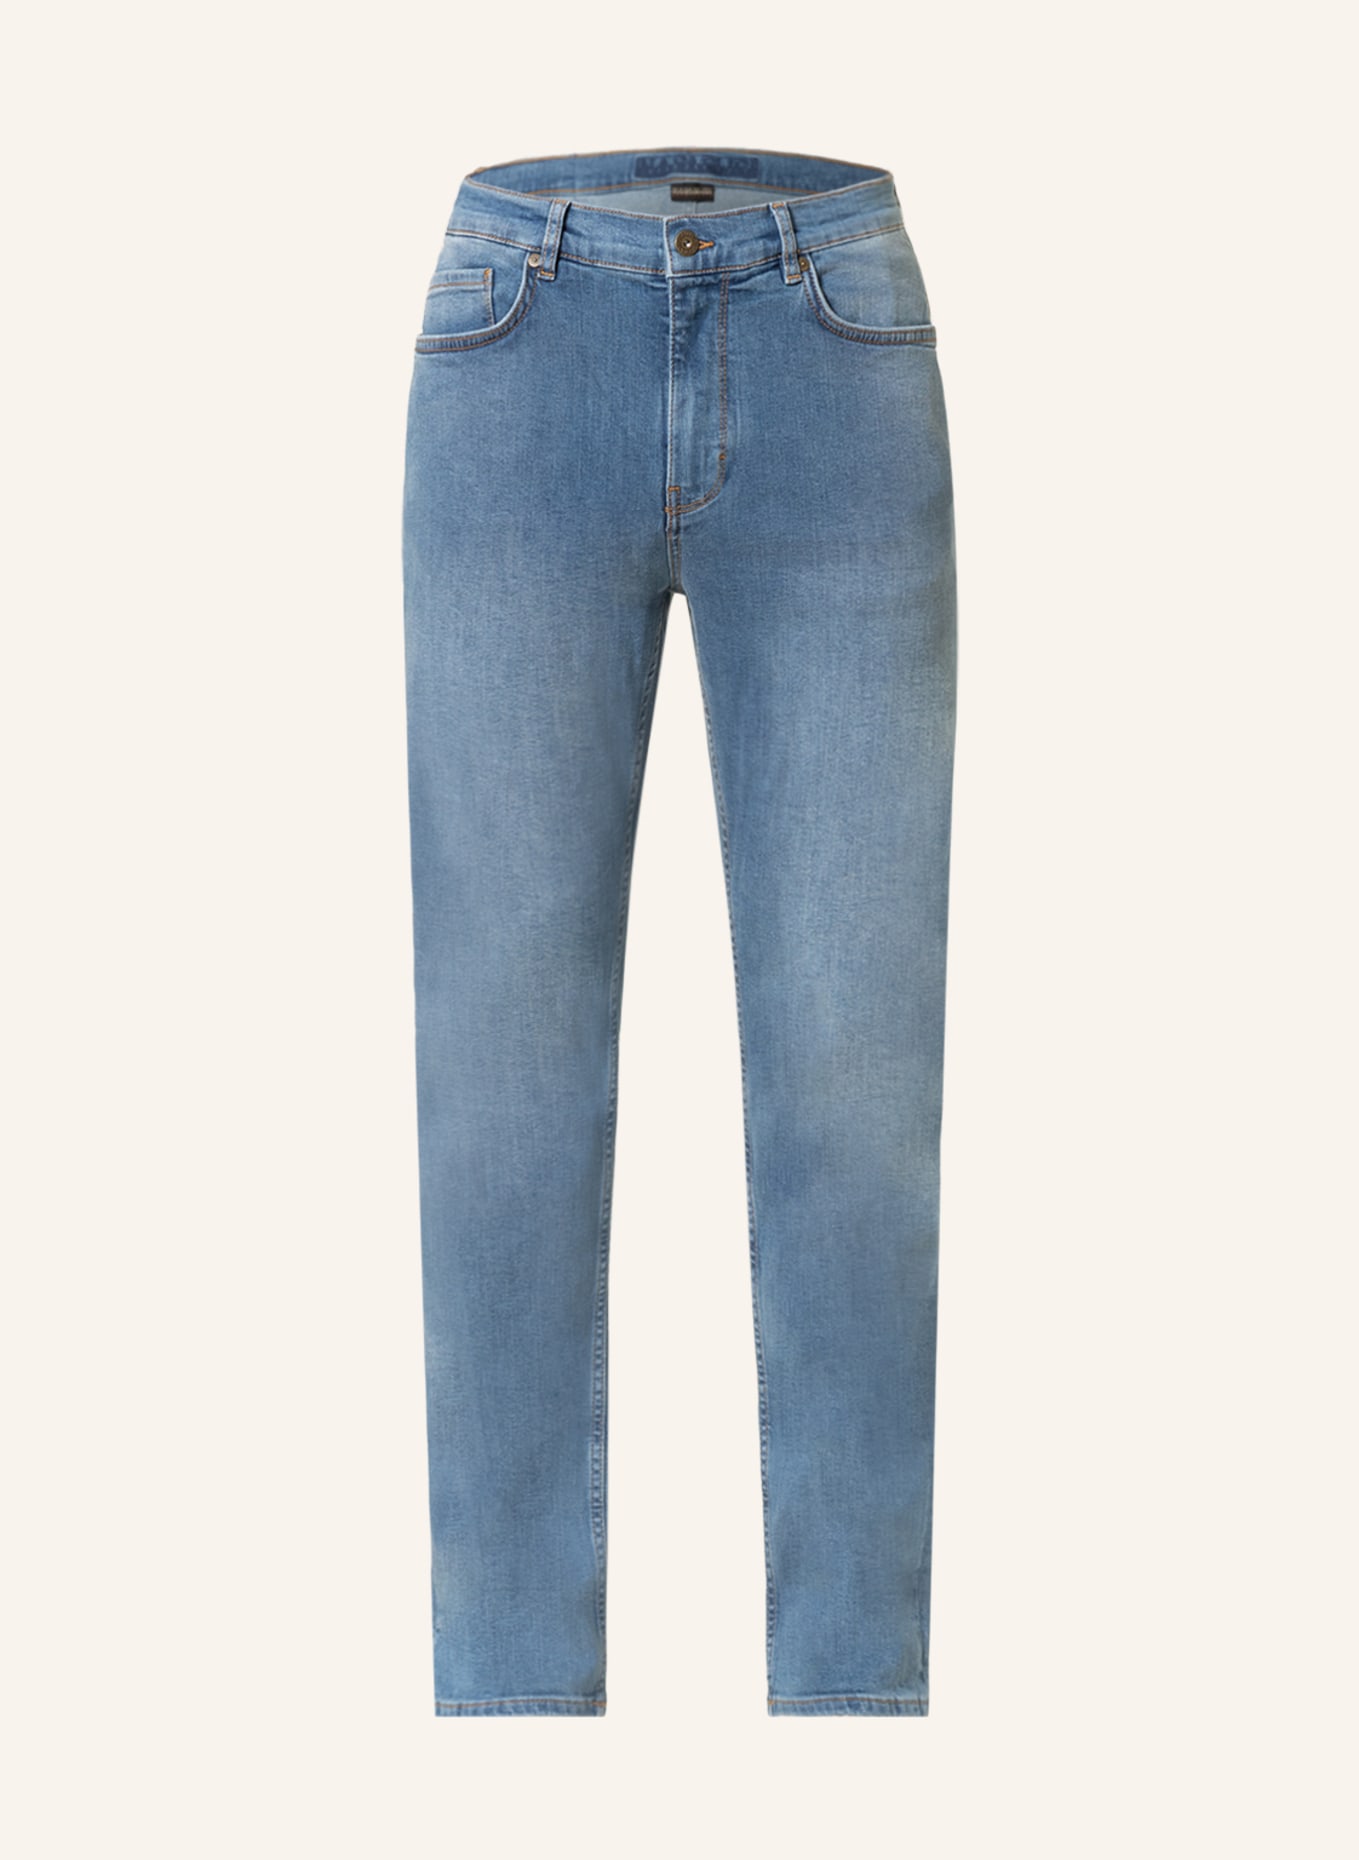 NAPAPIJRI Jeans L-SCANDI regular fit, Color: D90 MEDIUM BLU D90 (Image 1)